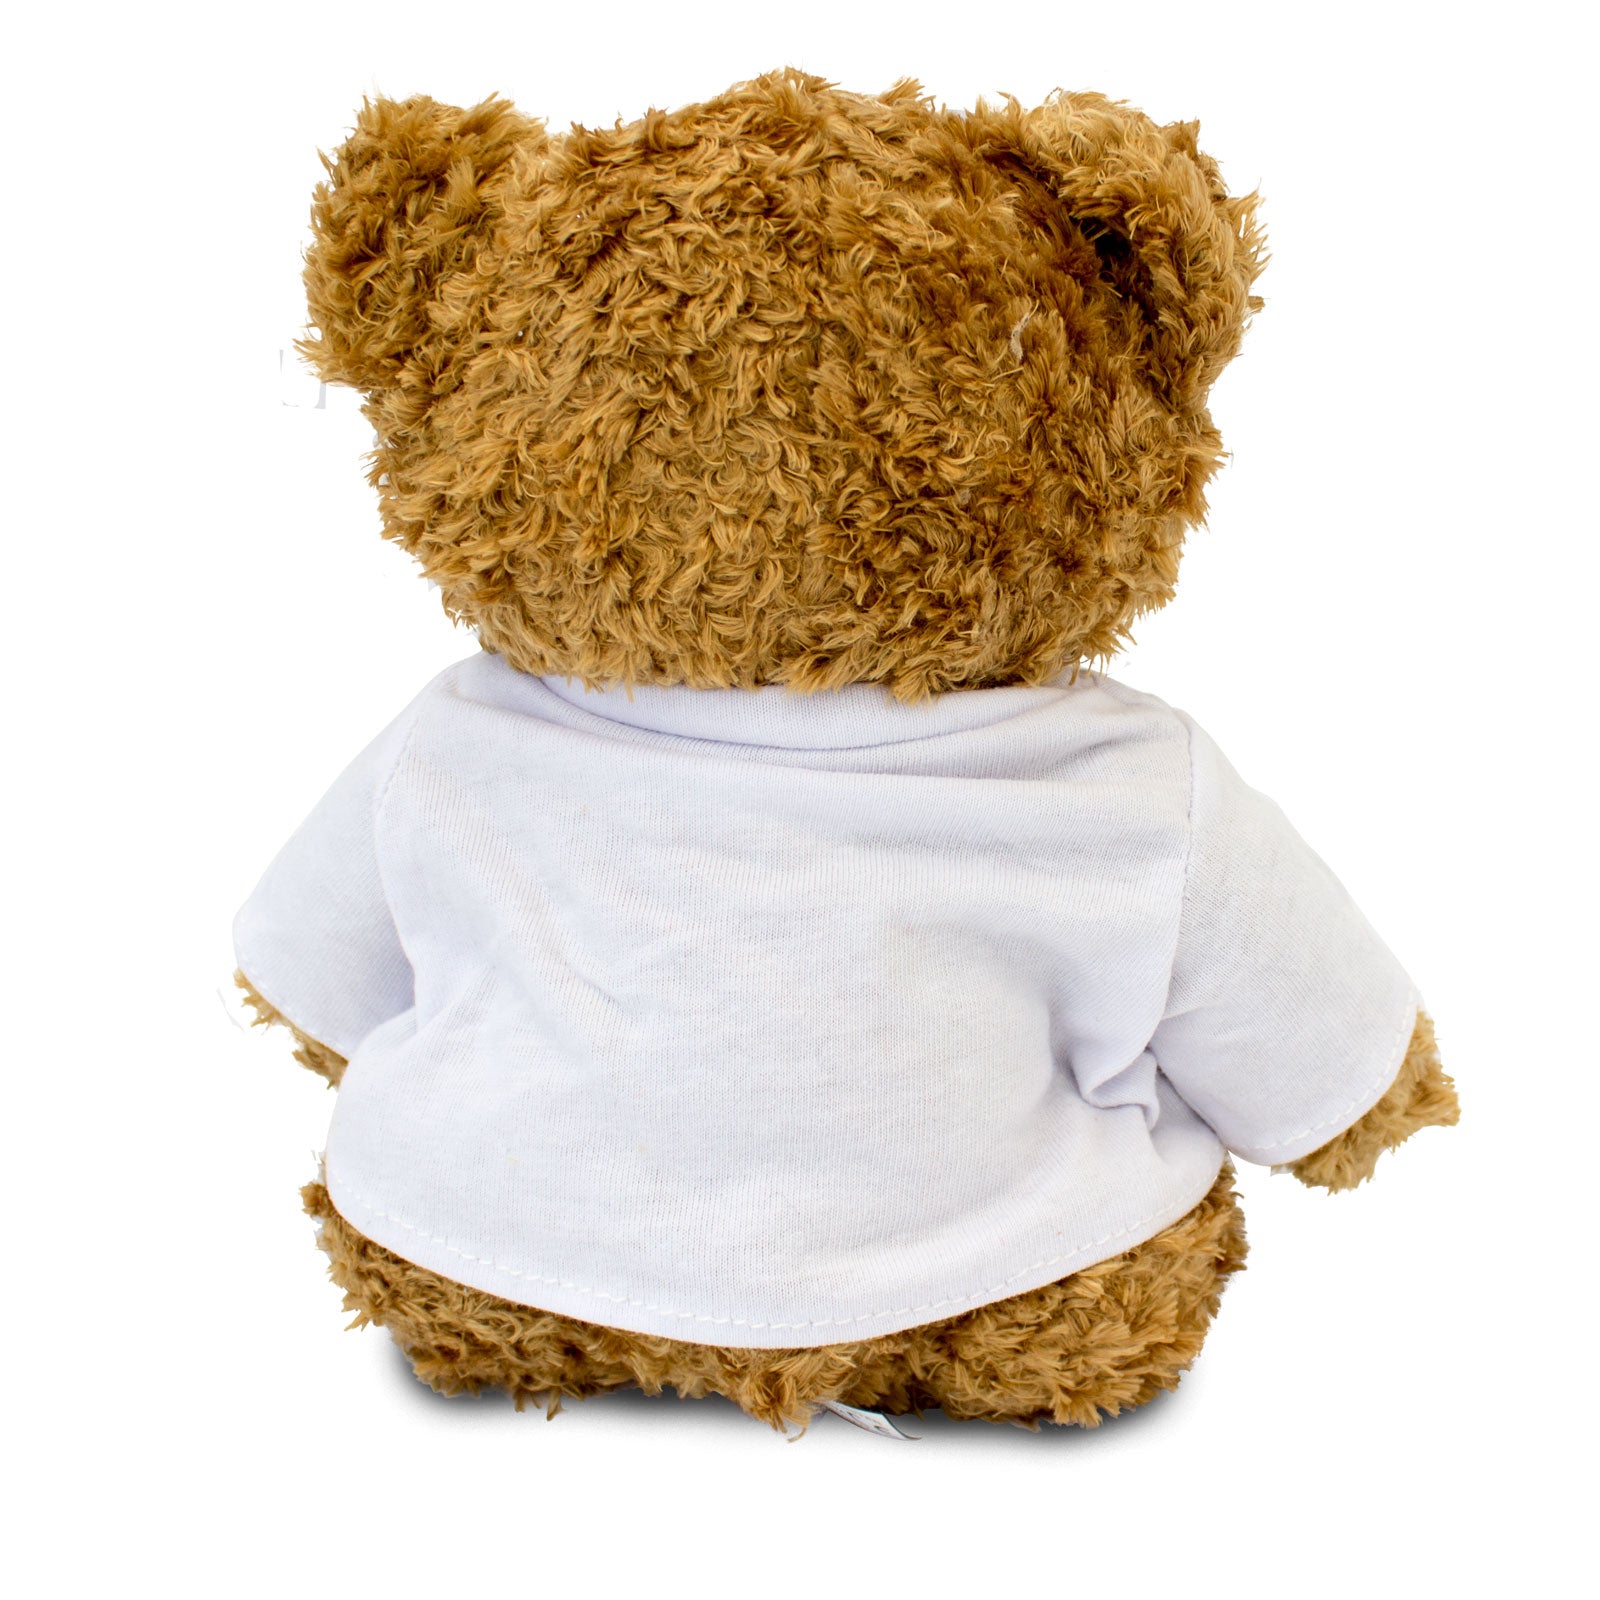 Get Well Soon Buster - Teddy Bear